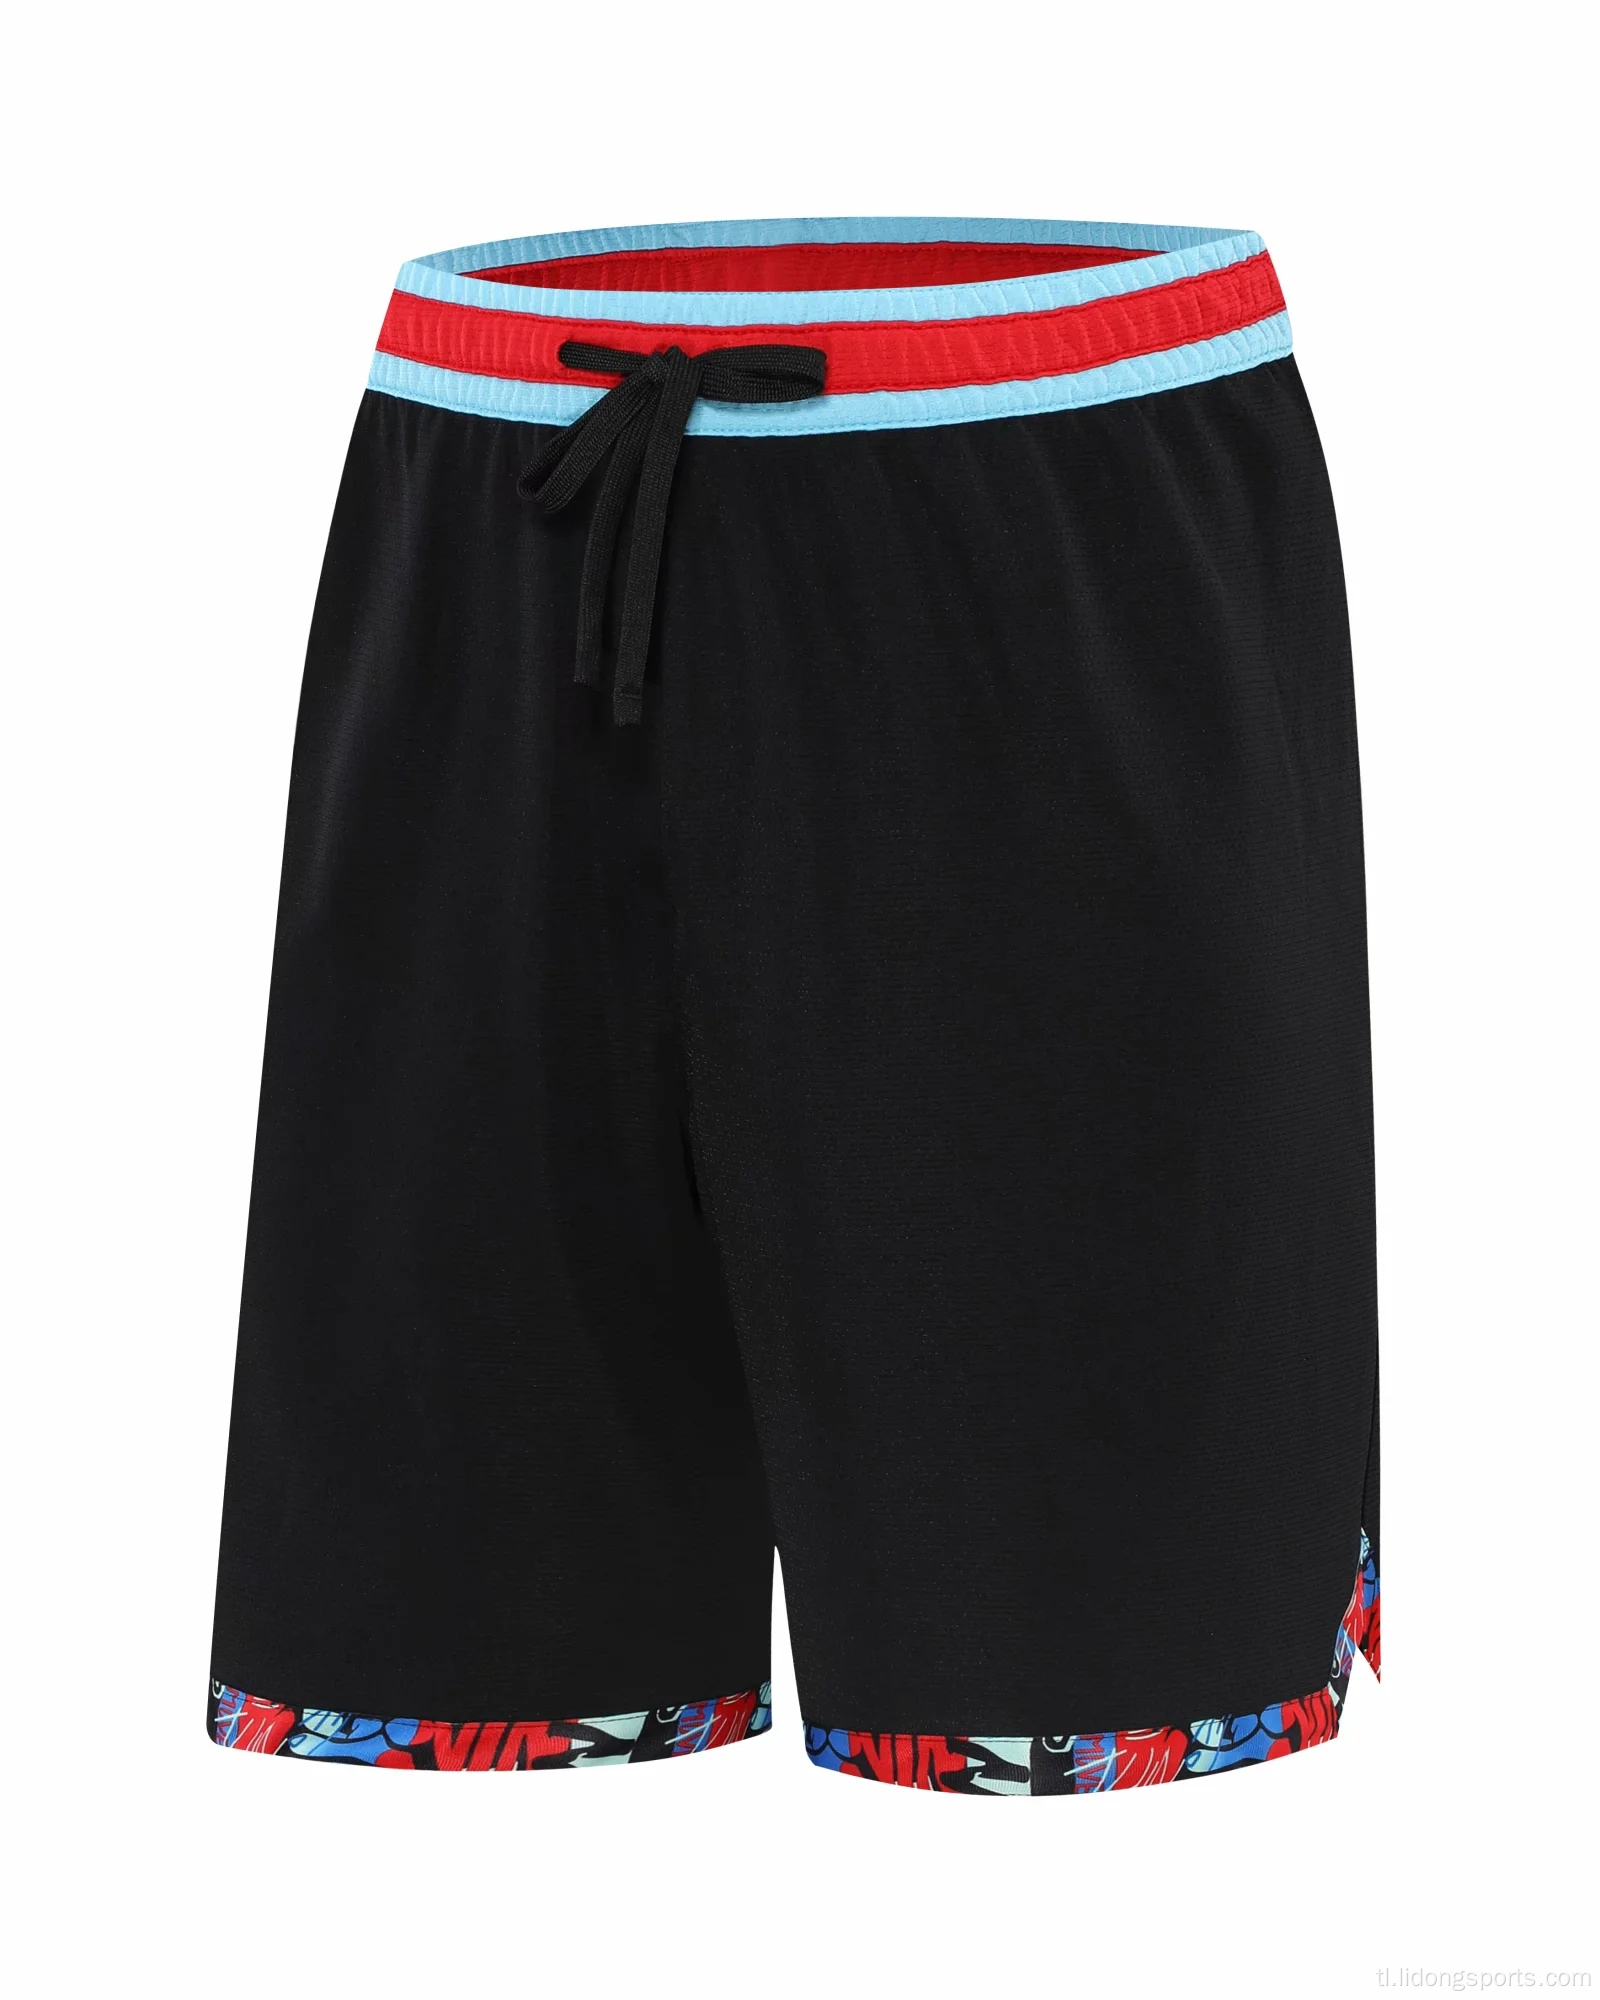 Tag -init mens fashion basketball shorts breathable gym shorts